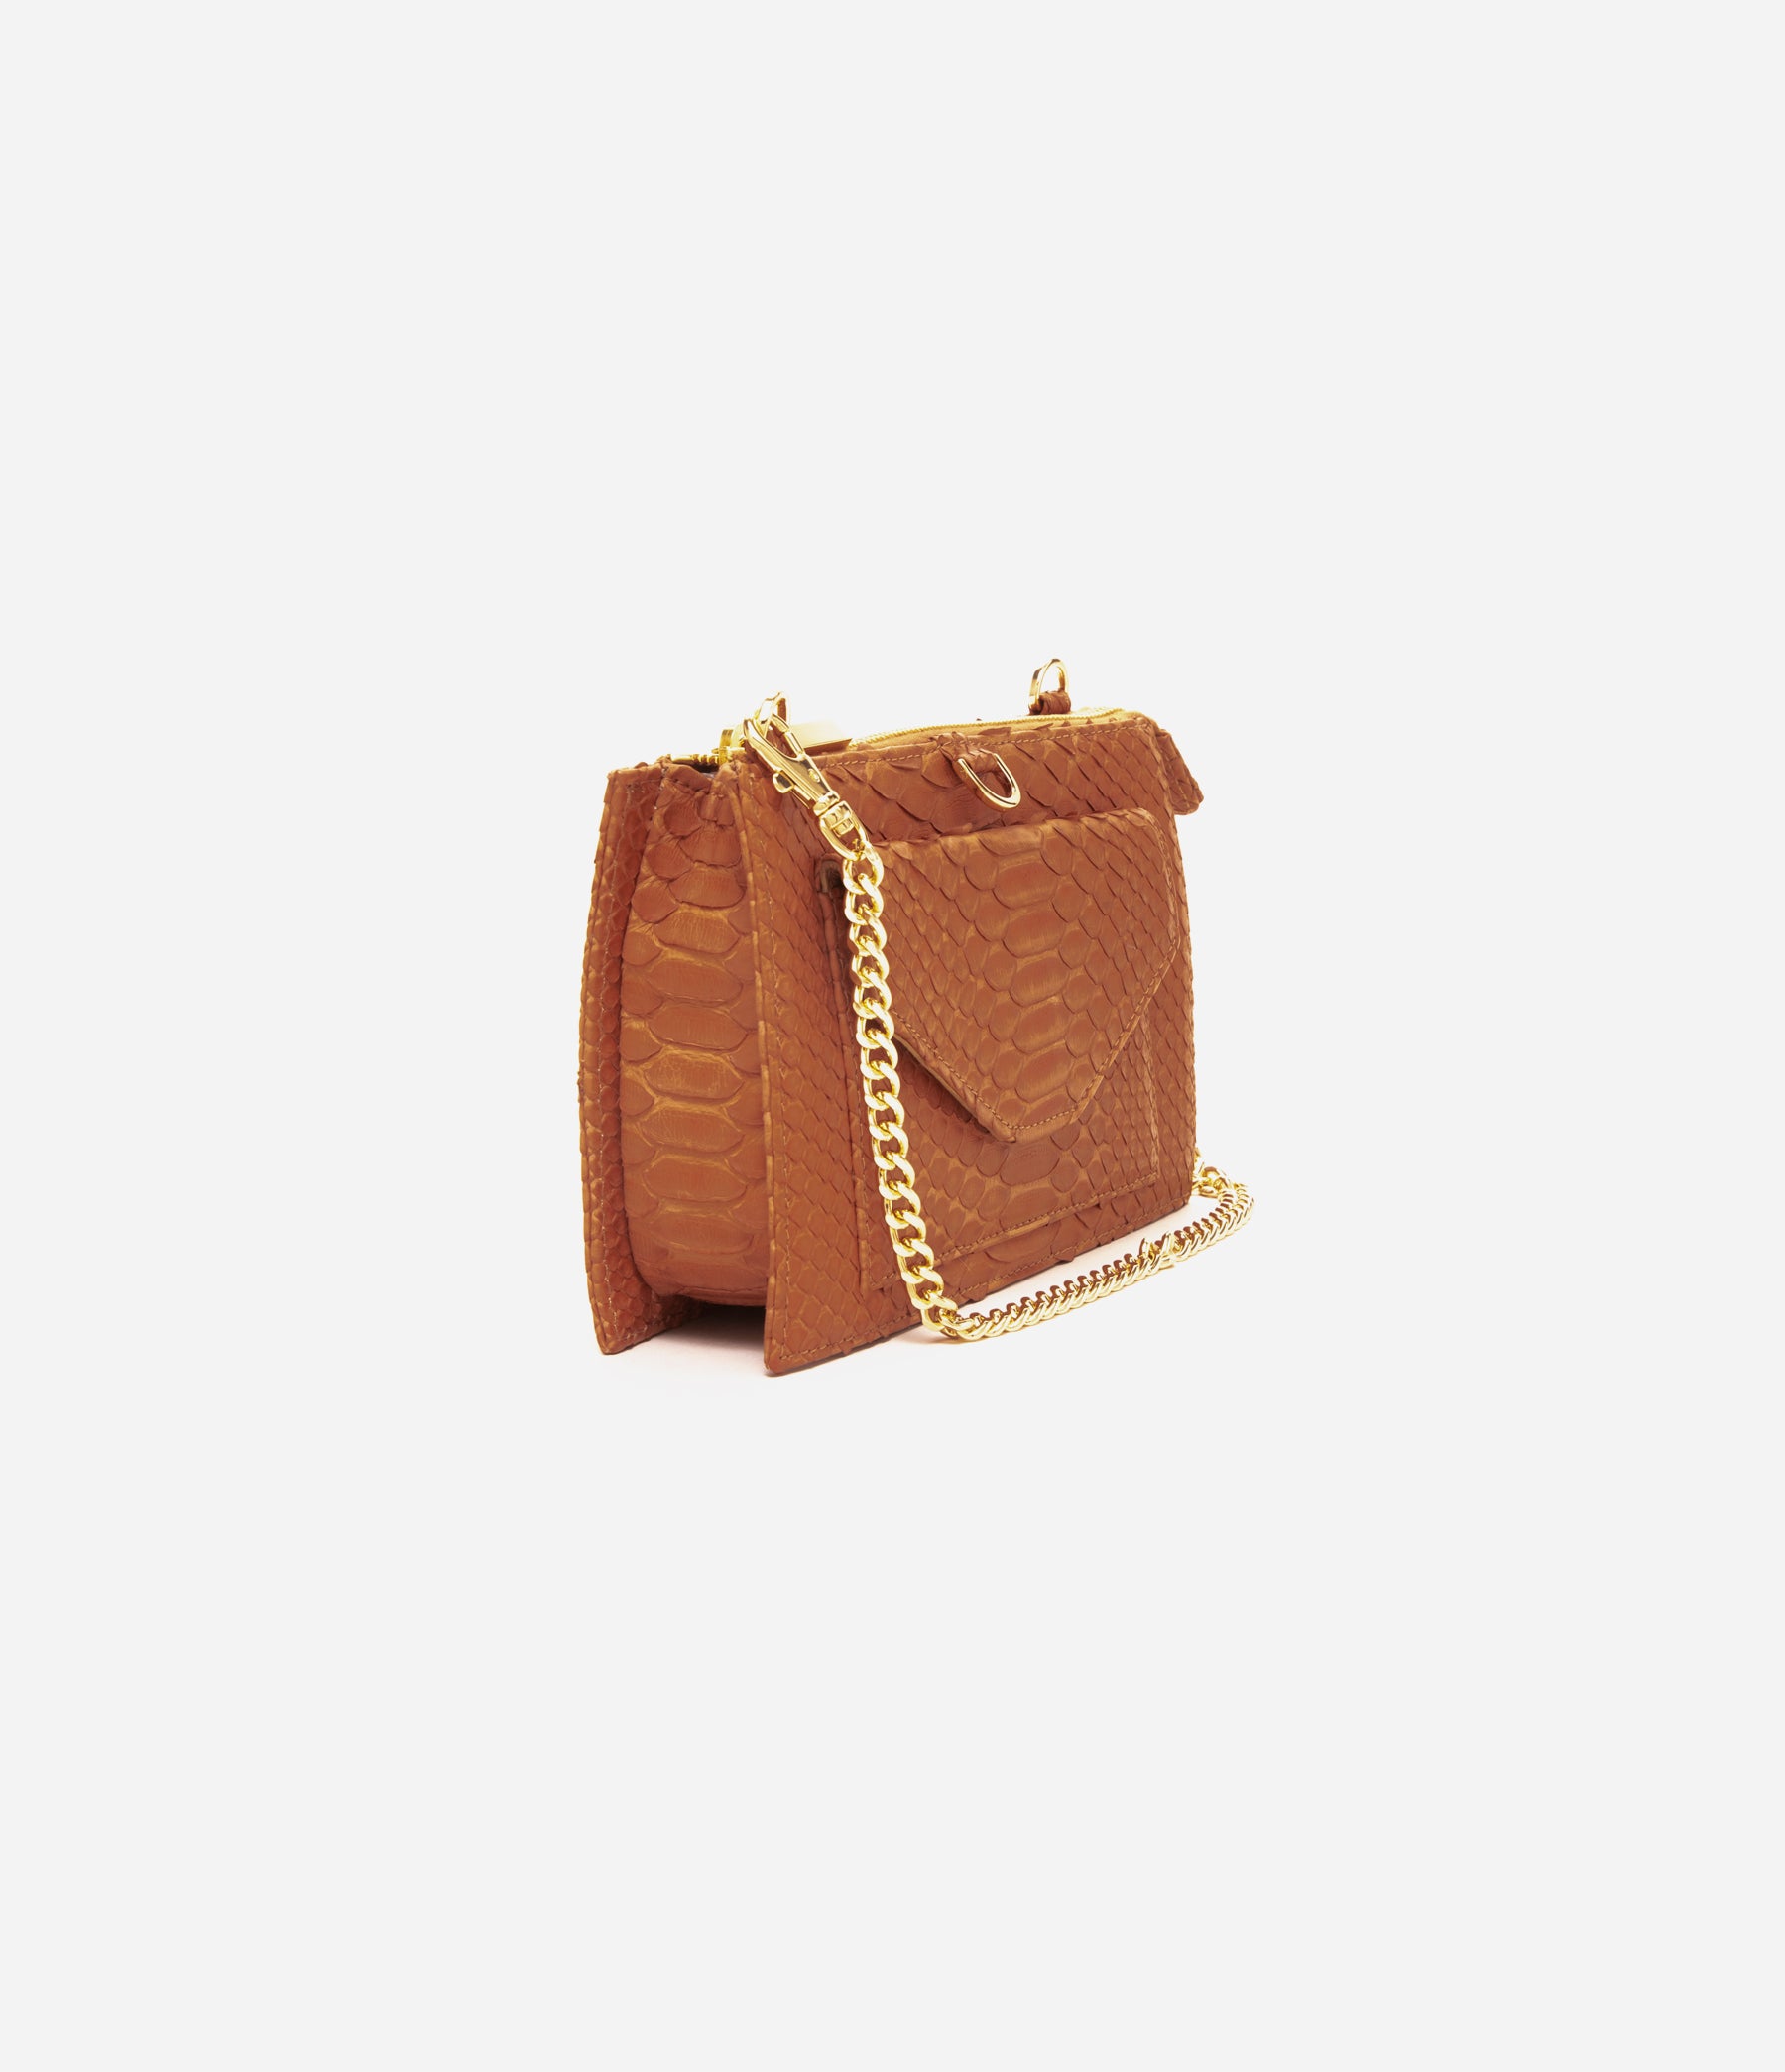 Louis Vuitton Cassia Clutch Bag Review 